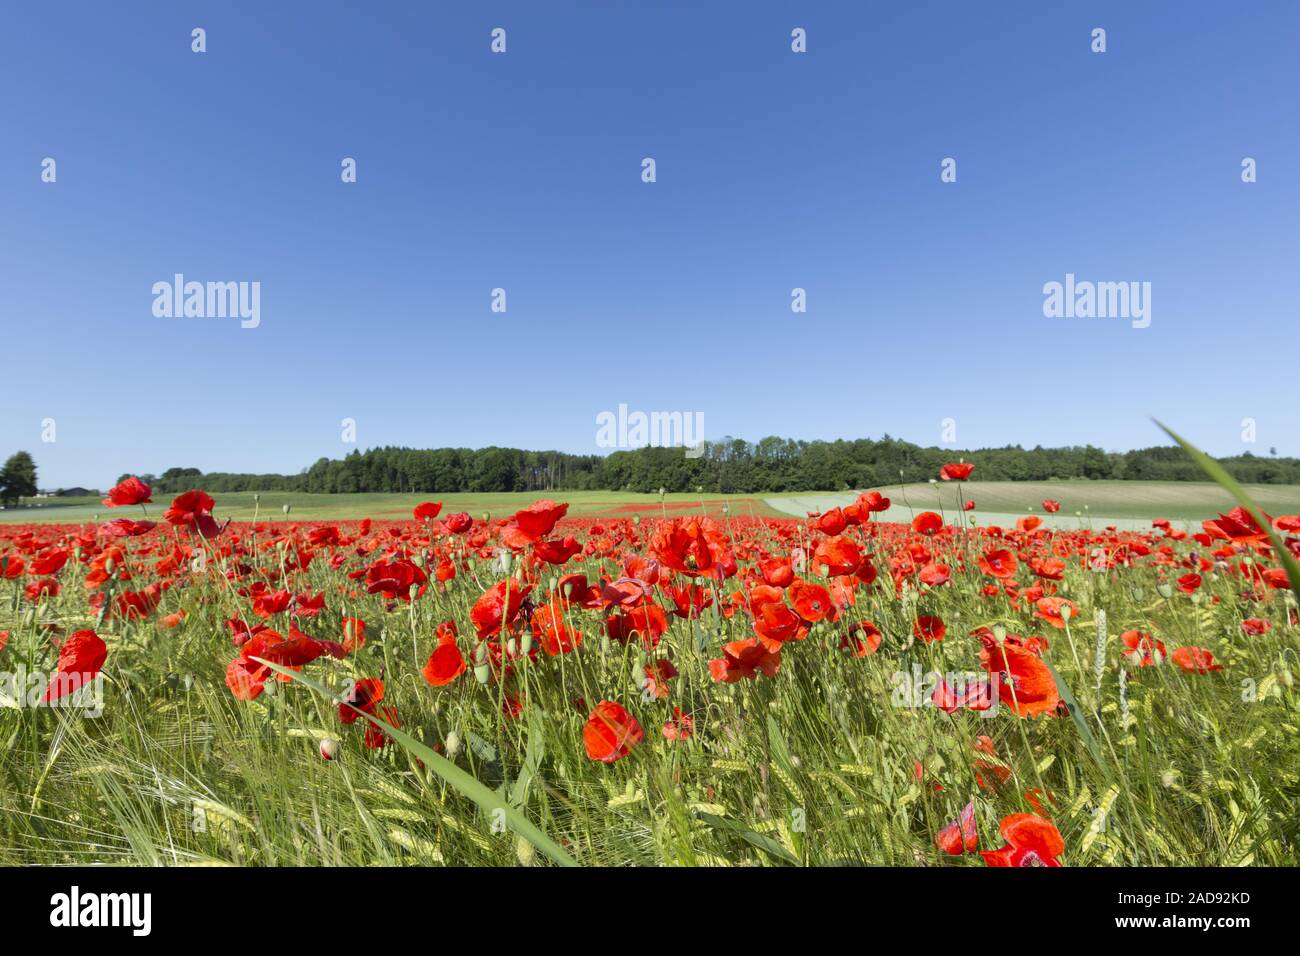 Blooming campo de amapolas en terrenos agrícolas Foto de stock